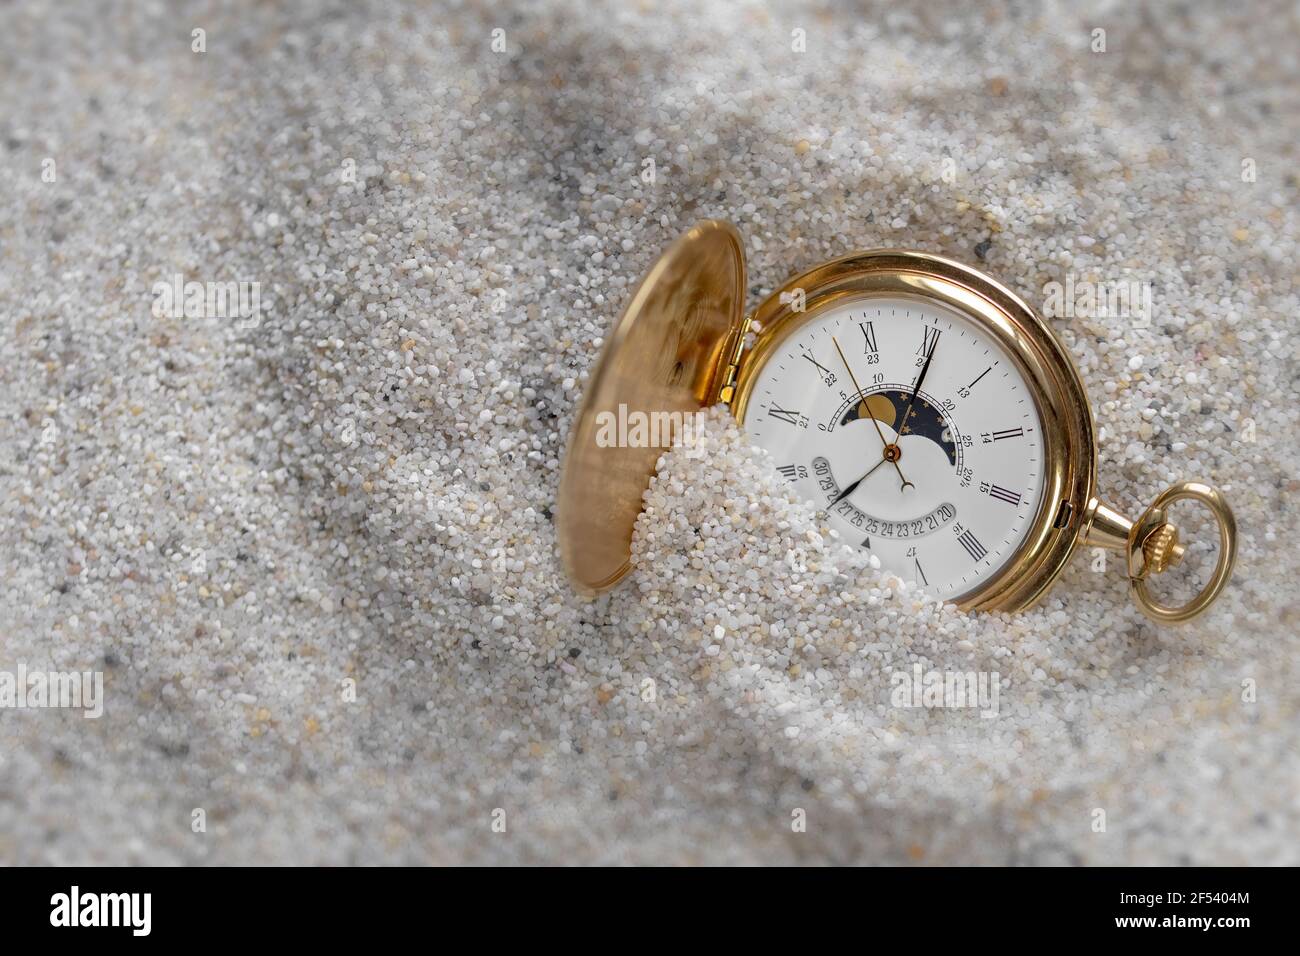 Un antiguo reloj de oro en la arena a la luz del día. Foto de stock